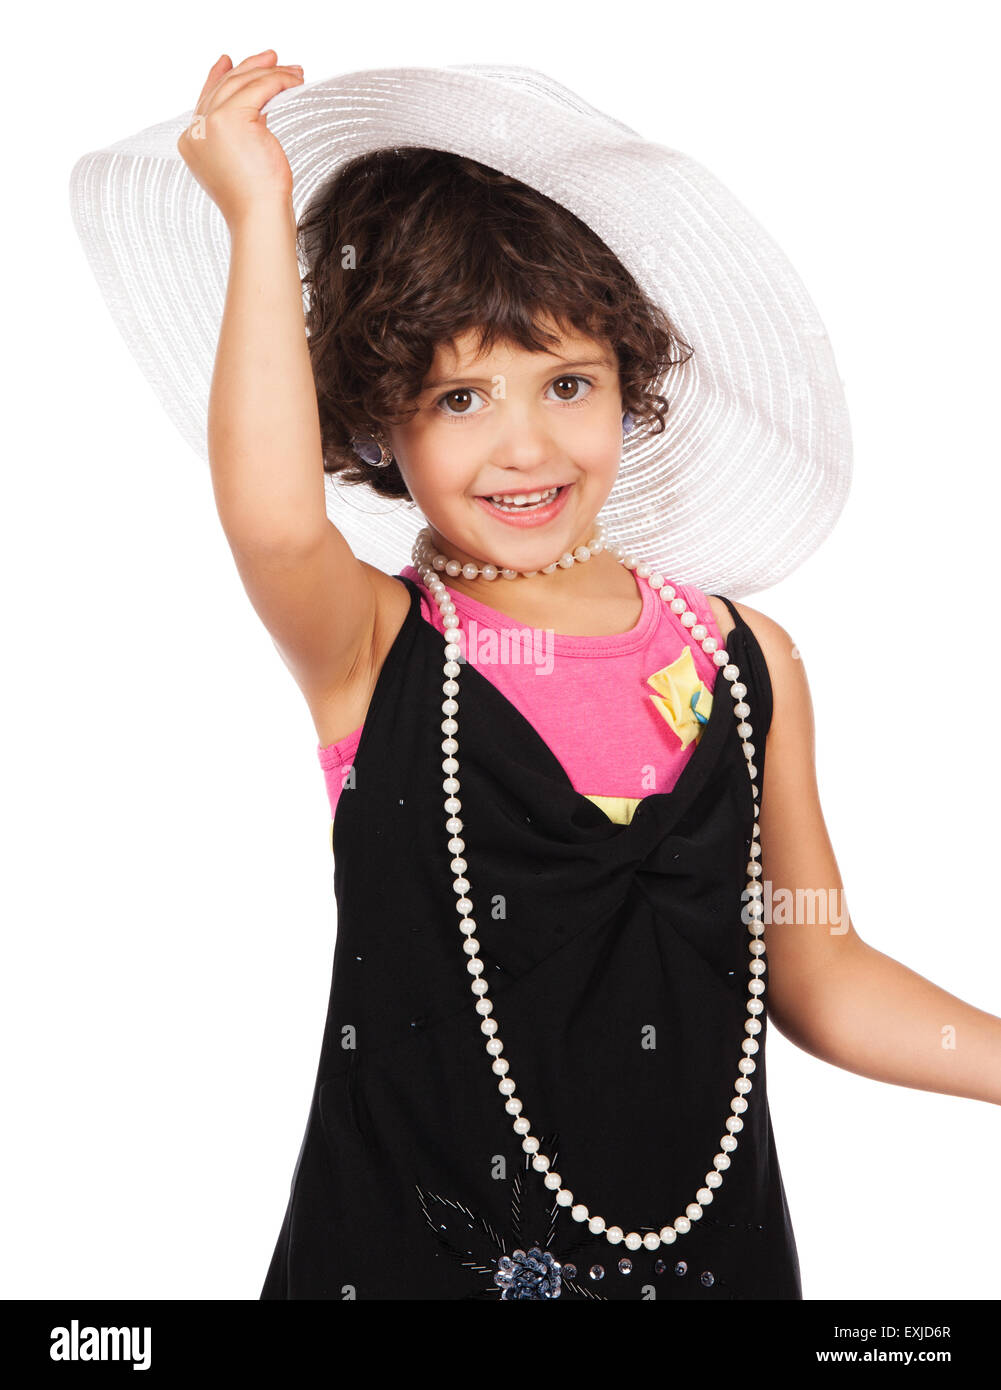 Entzückendes niedliche kaukasisches Mädchen spielt Kleid auf. Sie trägt ein schwarzes Kleid, weißen Hut, Ohrringe und Korallen hochhackige Schuhe. Stockfoto